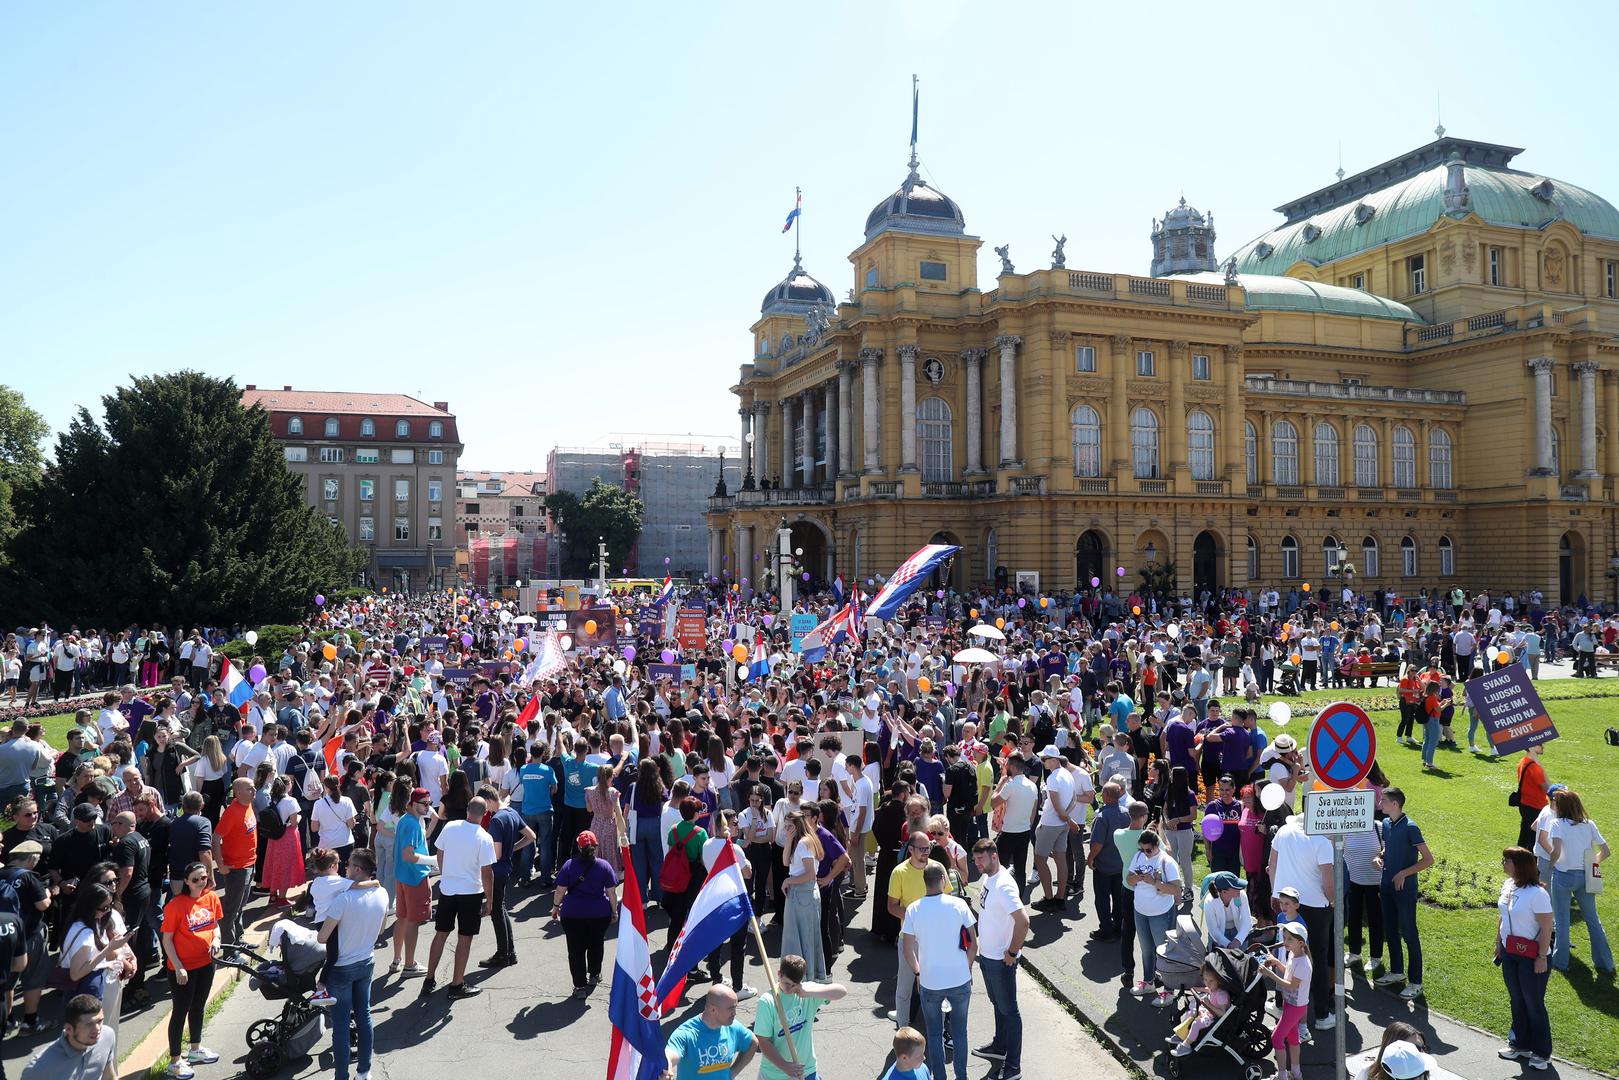 U Zagrebu se danas održava Hod za život. Deveta povorka održava se pod geslom "Glas rođenih za život nerođenih", a počela je u okupljanjem kod Hrvatskog narodnog kazališta